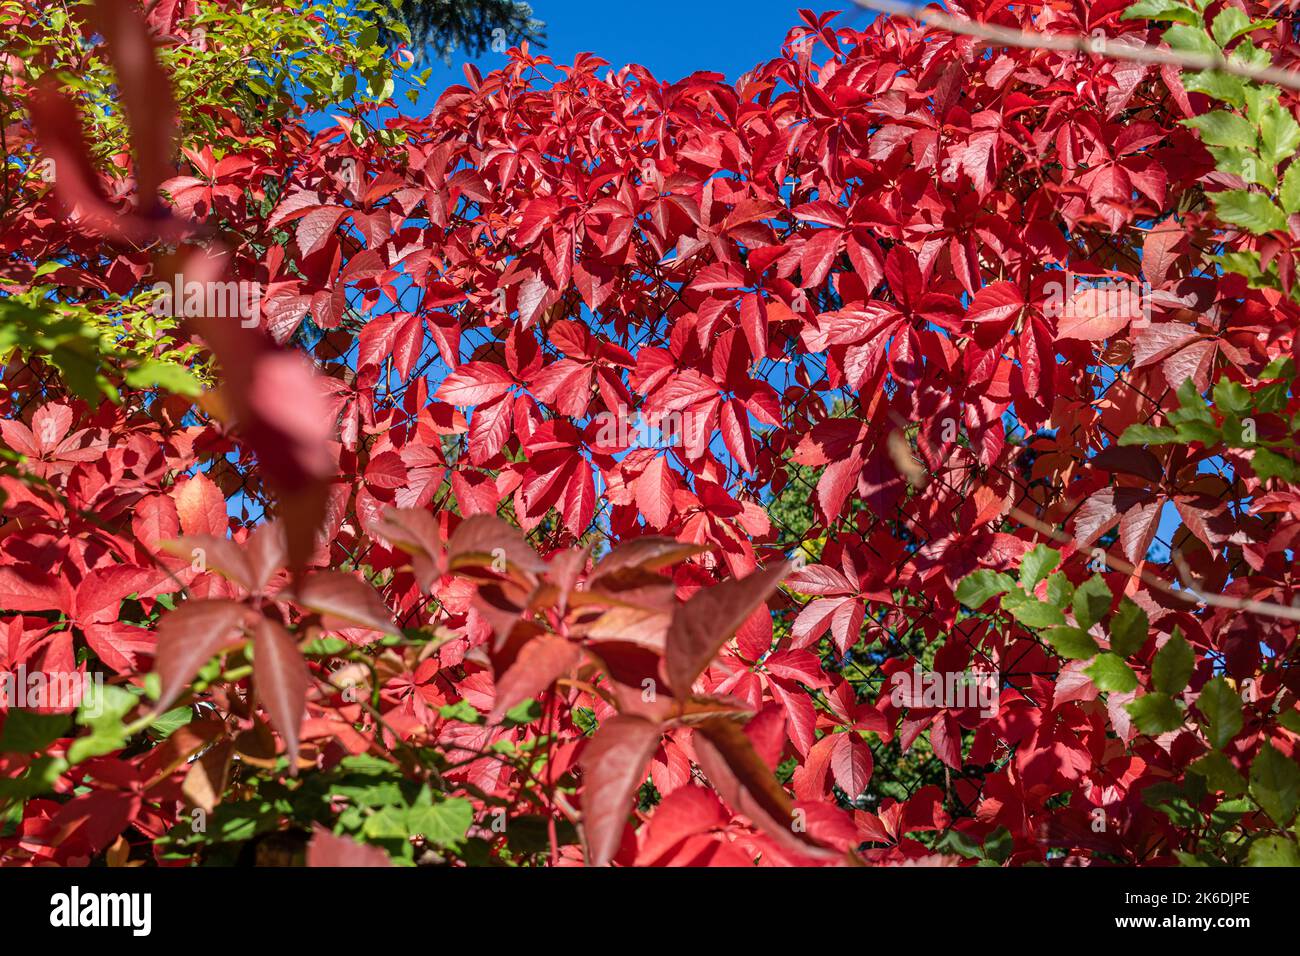 Virginia creeper (Parthenocissus quinquefolia) in vibrant fall color on a sunny autumn day Stock Photo